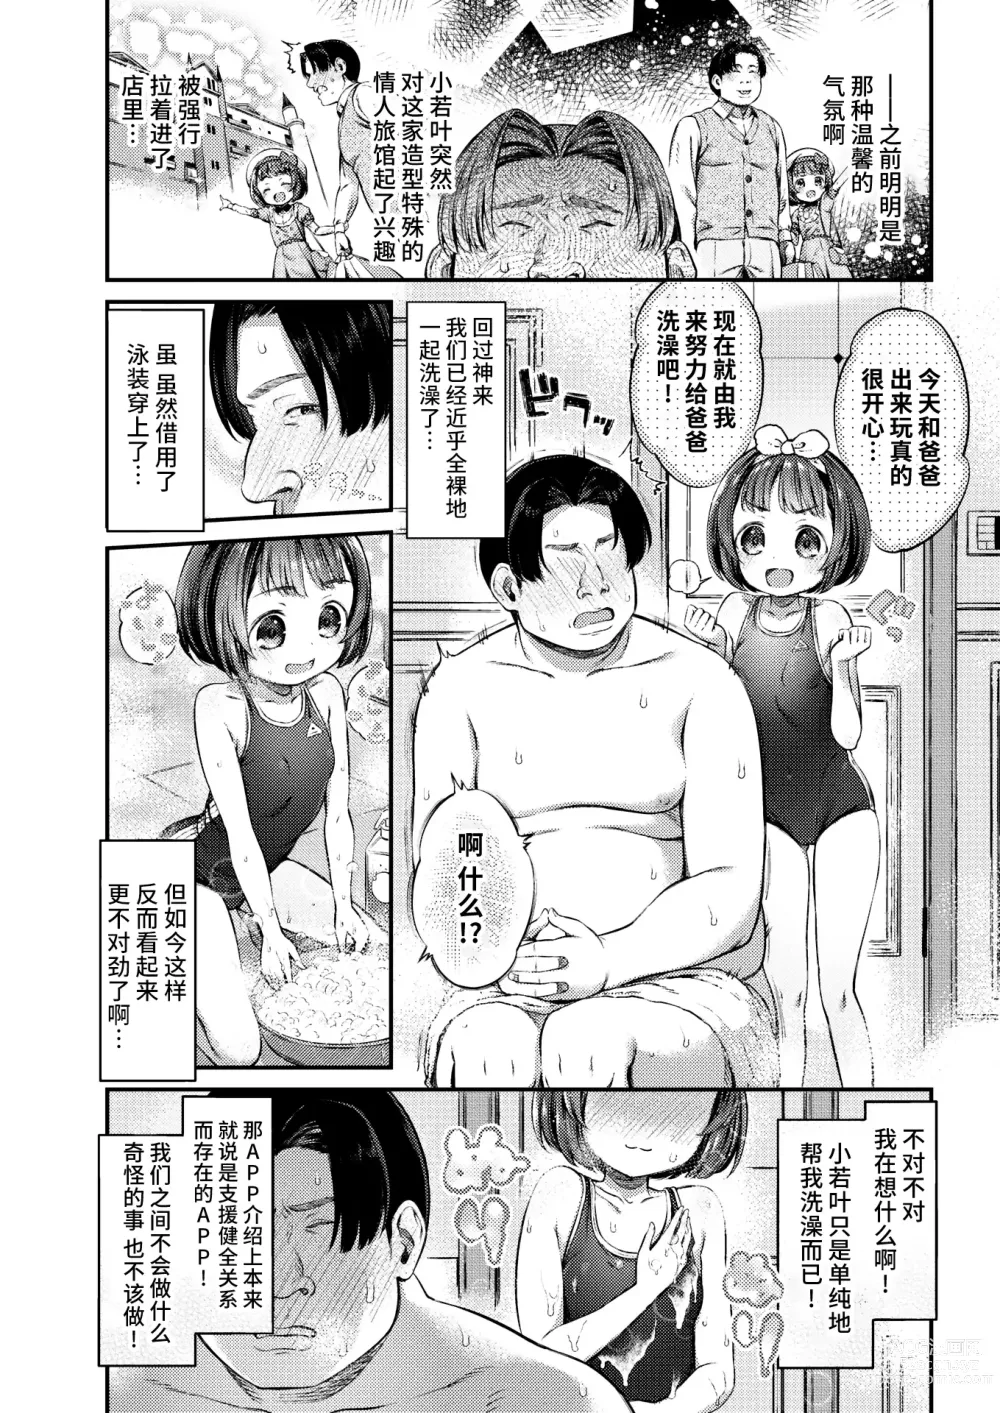 Page 4 of manga Papakatsu ni wa Kiken ga Ippai! - Papa Sex with Dangerous Girl